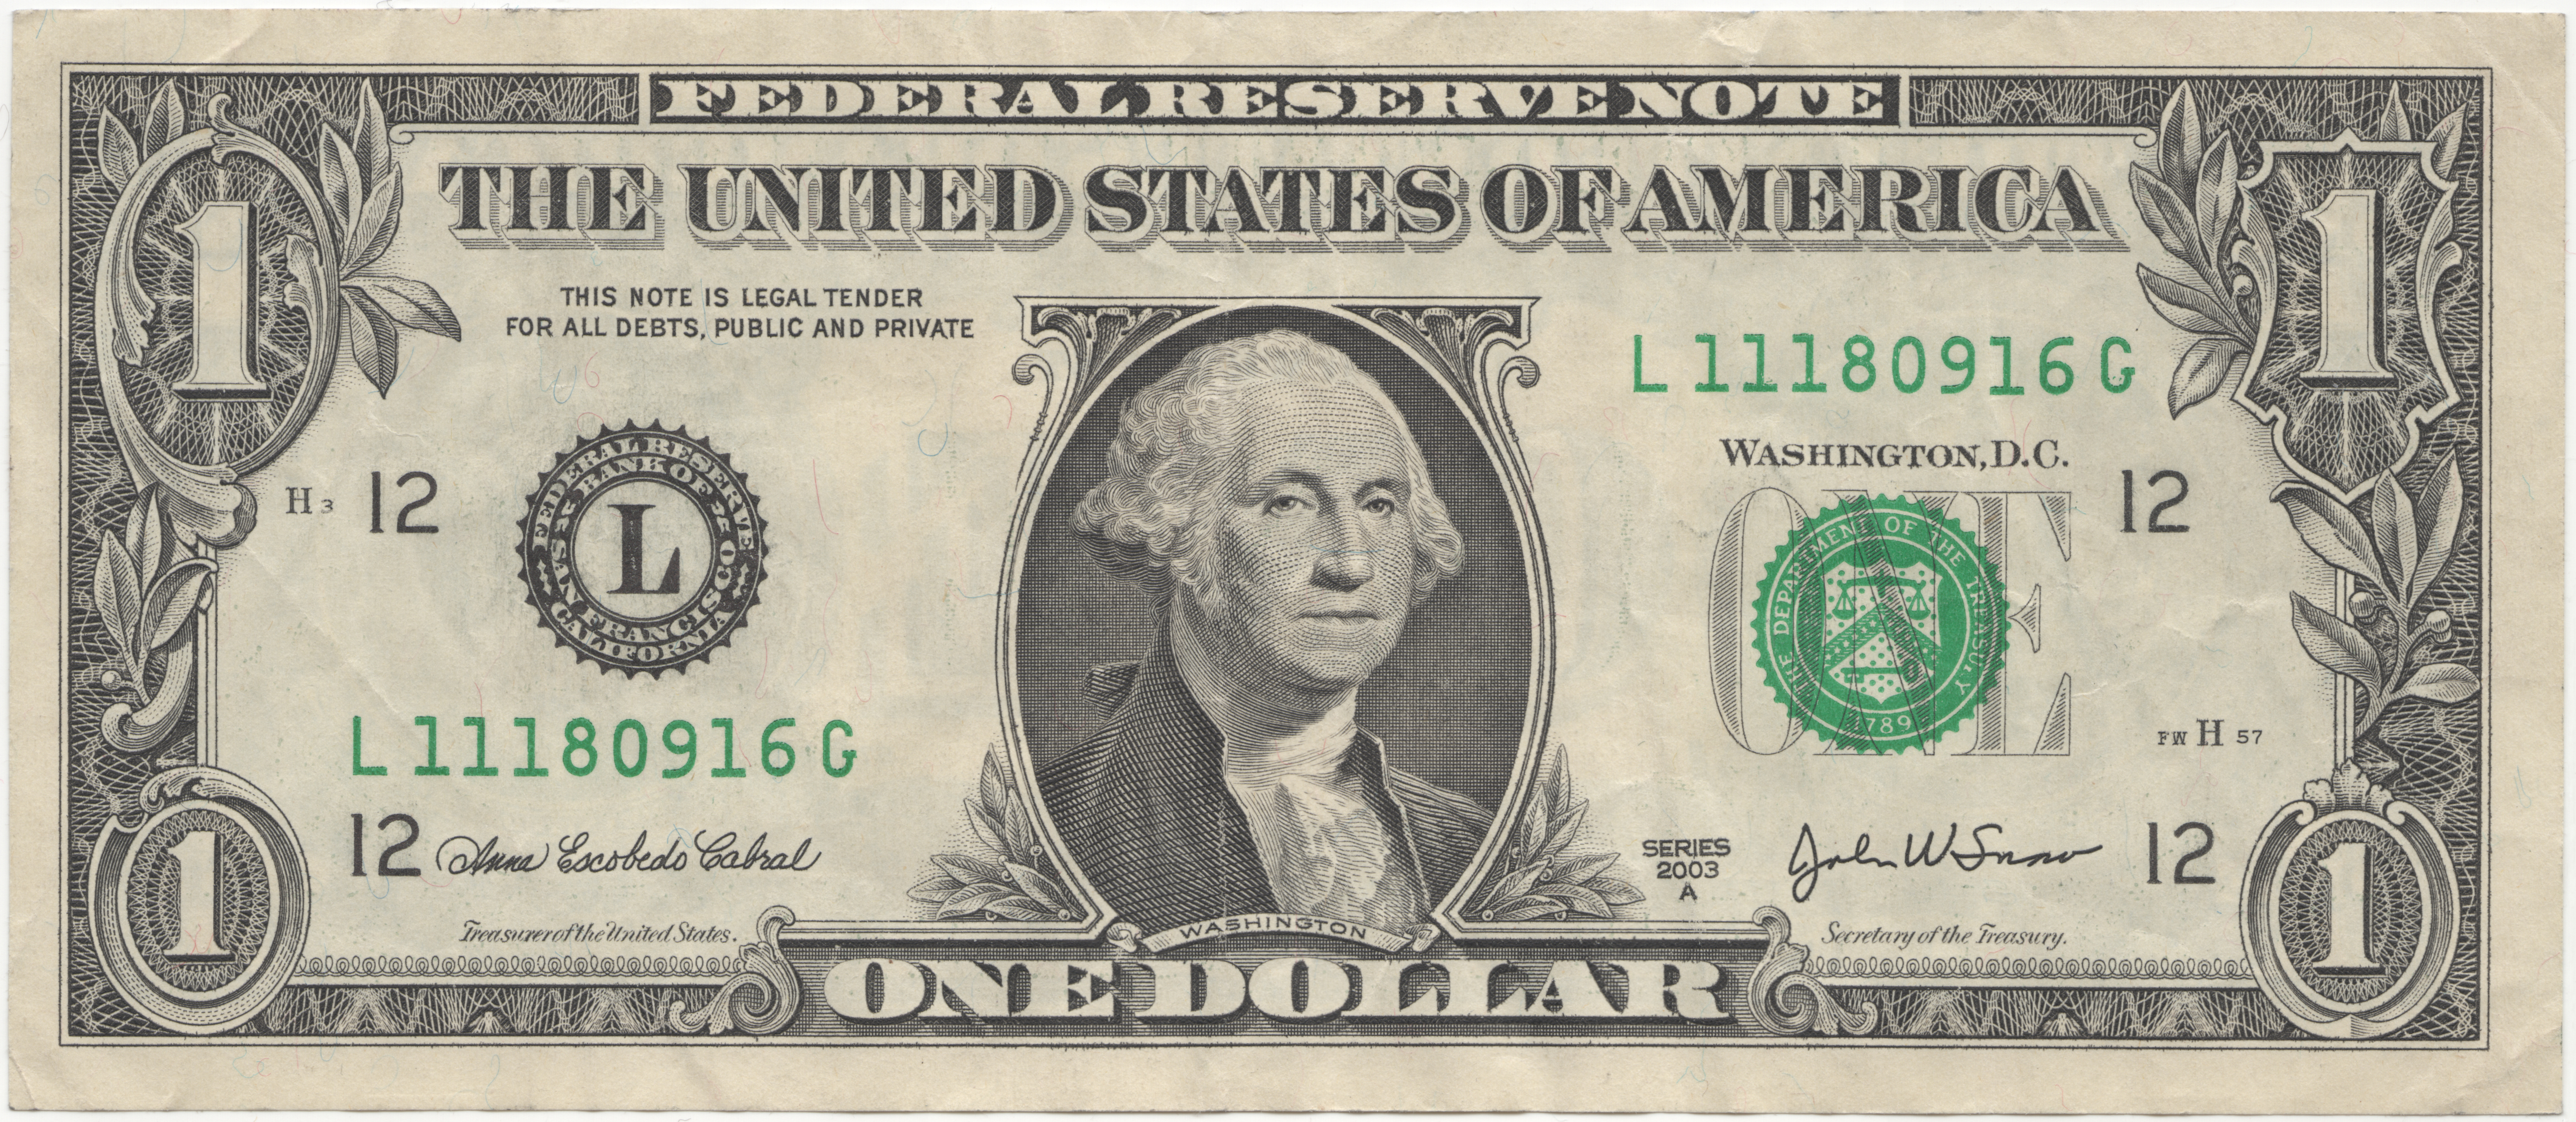 アメリカドル... United States one dollar bill, series 2003